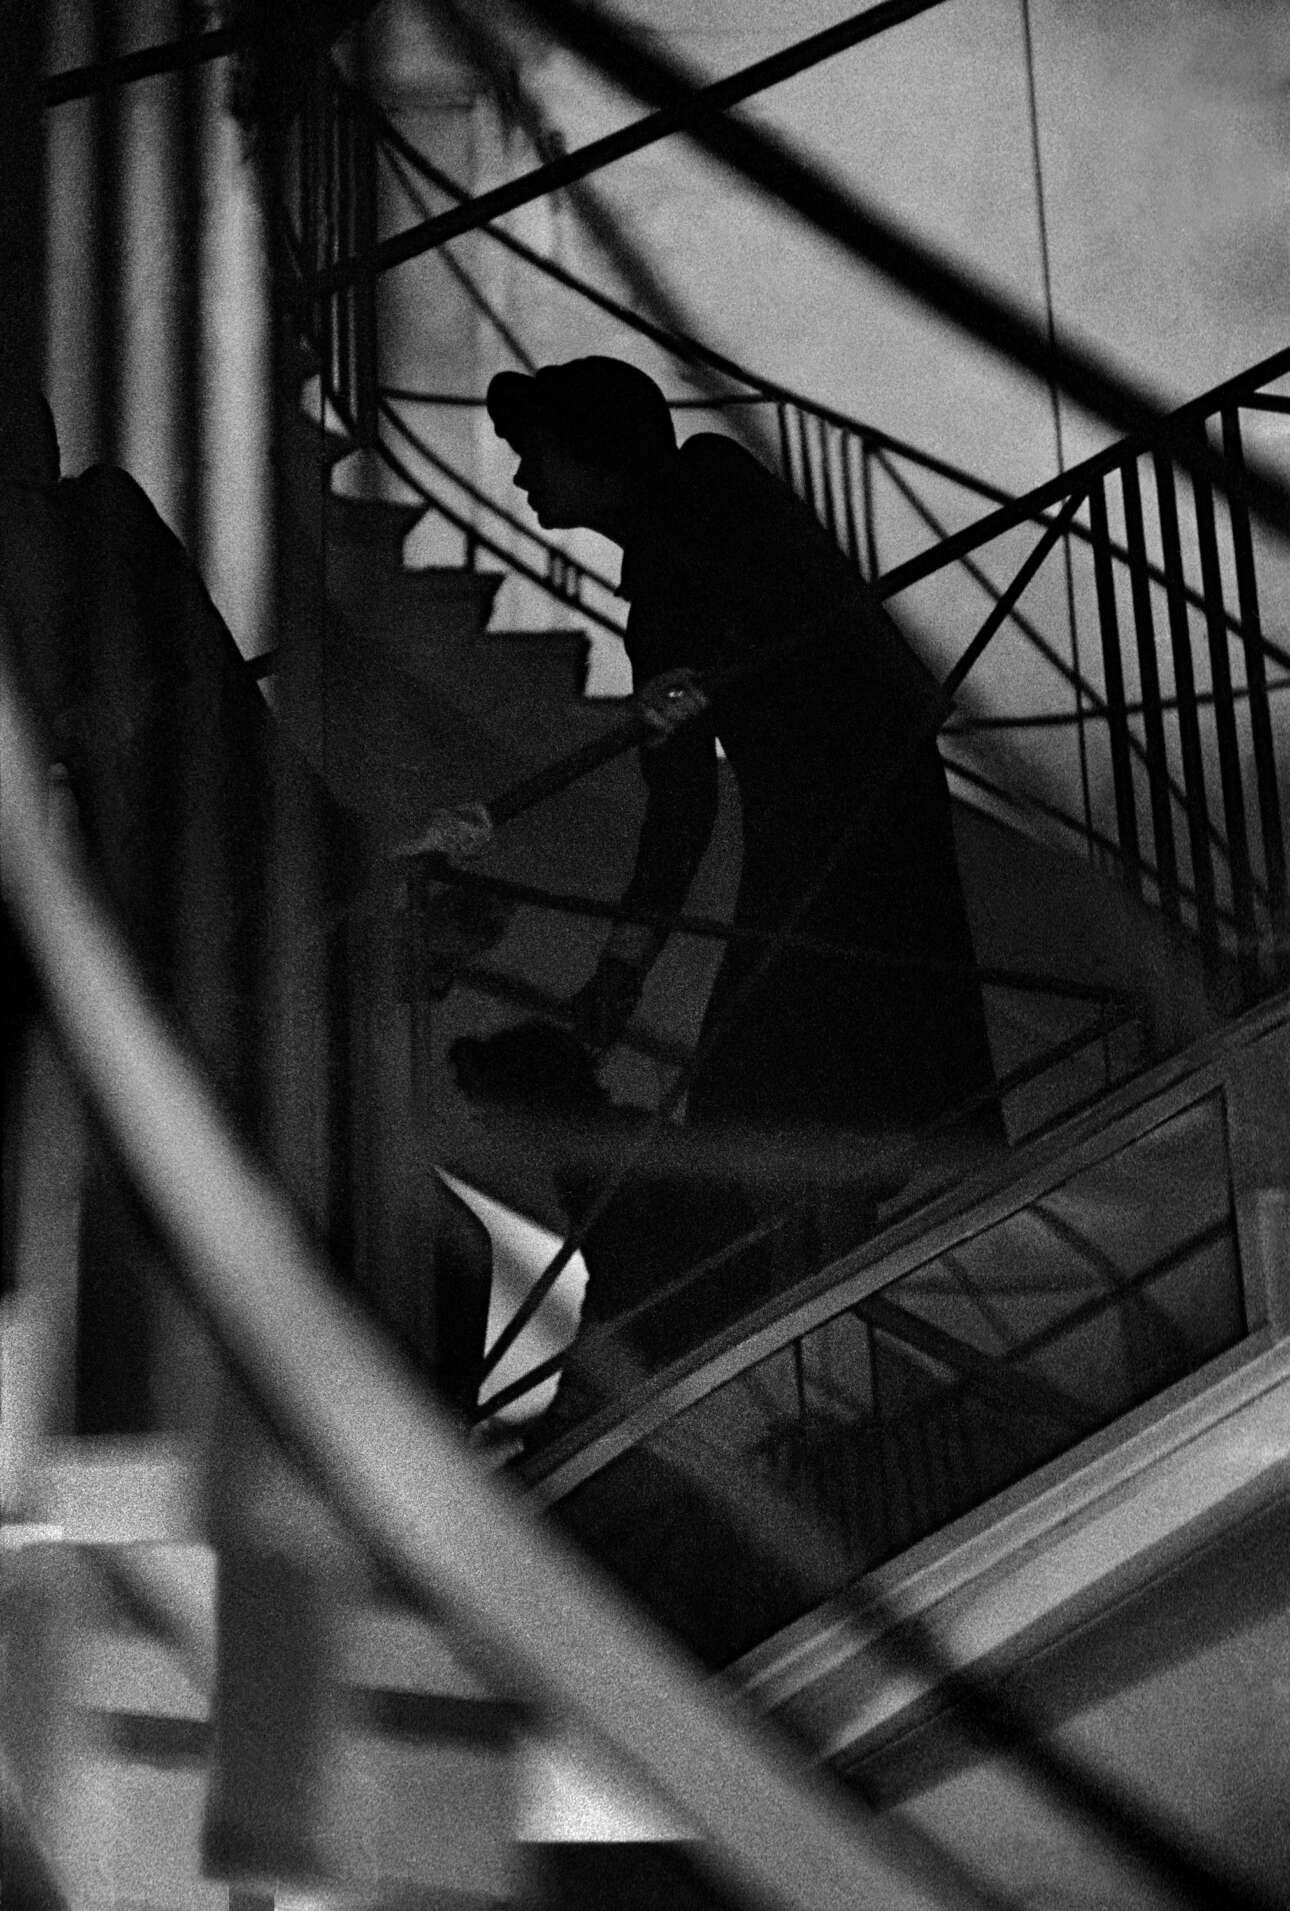 Παρίσι, 1958. Μία ατμοσφαιρική λήψη με την Κοκό Σανέλ να παρακολουθεί την επίδειξη μόδας της από τις σκάλες